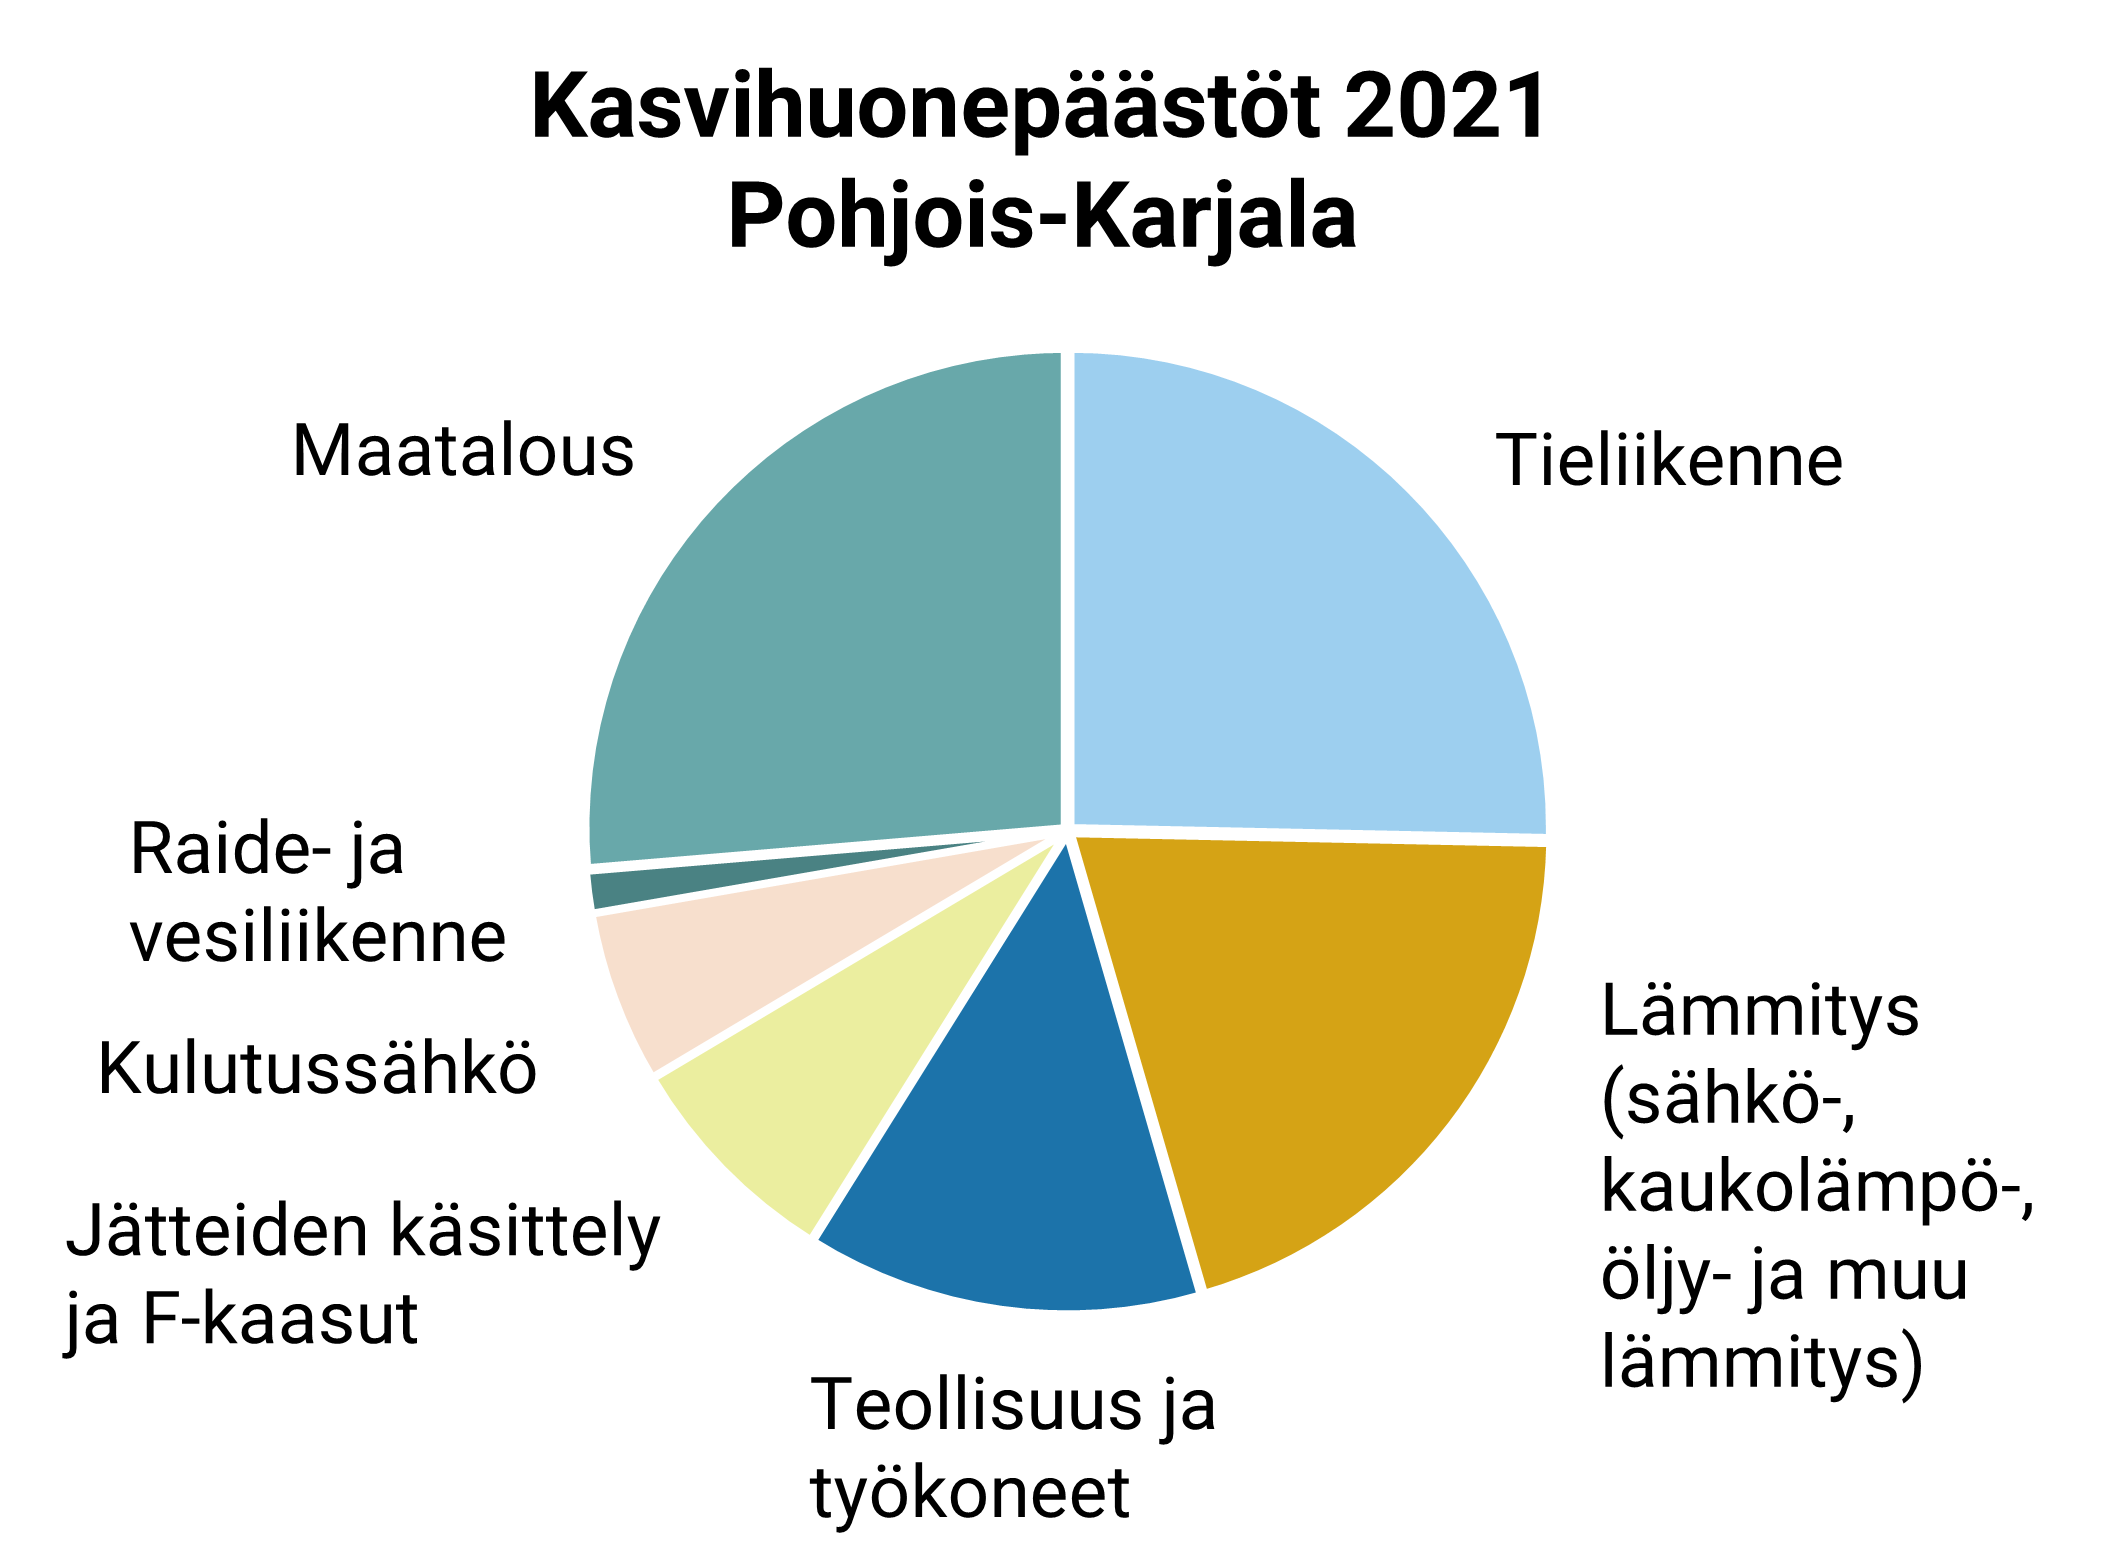 Maatalous ja tieliikenne aiheuttivat molemmat n. 25 % vuoden 2021 kasvihuonepäästöistä Pohjois-Karjalassa. Seuraavina järjestyksessä: Lämmitys (n. 20 %), Teollisuus ja työkoneet, Jätteiden käsittely ja F-kaasut, Kulutussähkö, Raide- ja vesiliikenne.